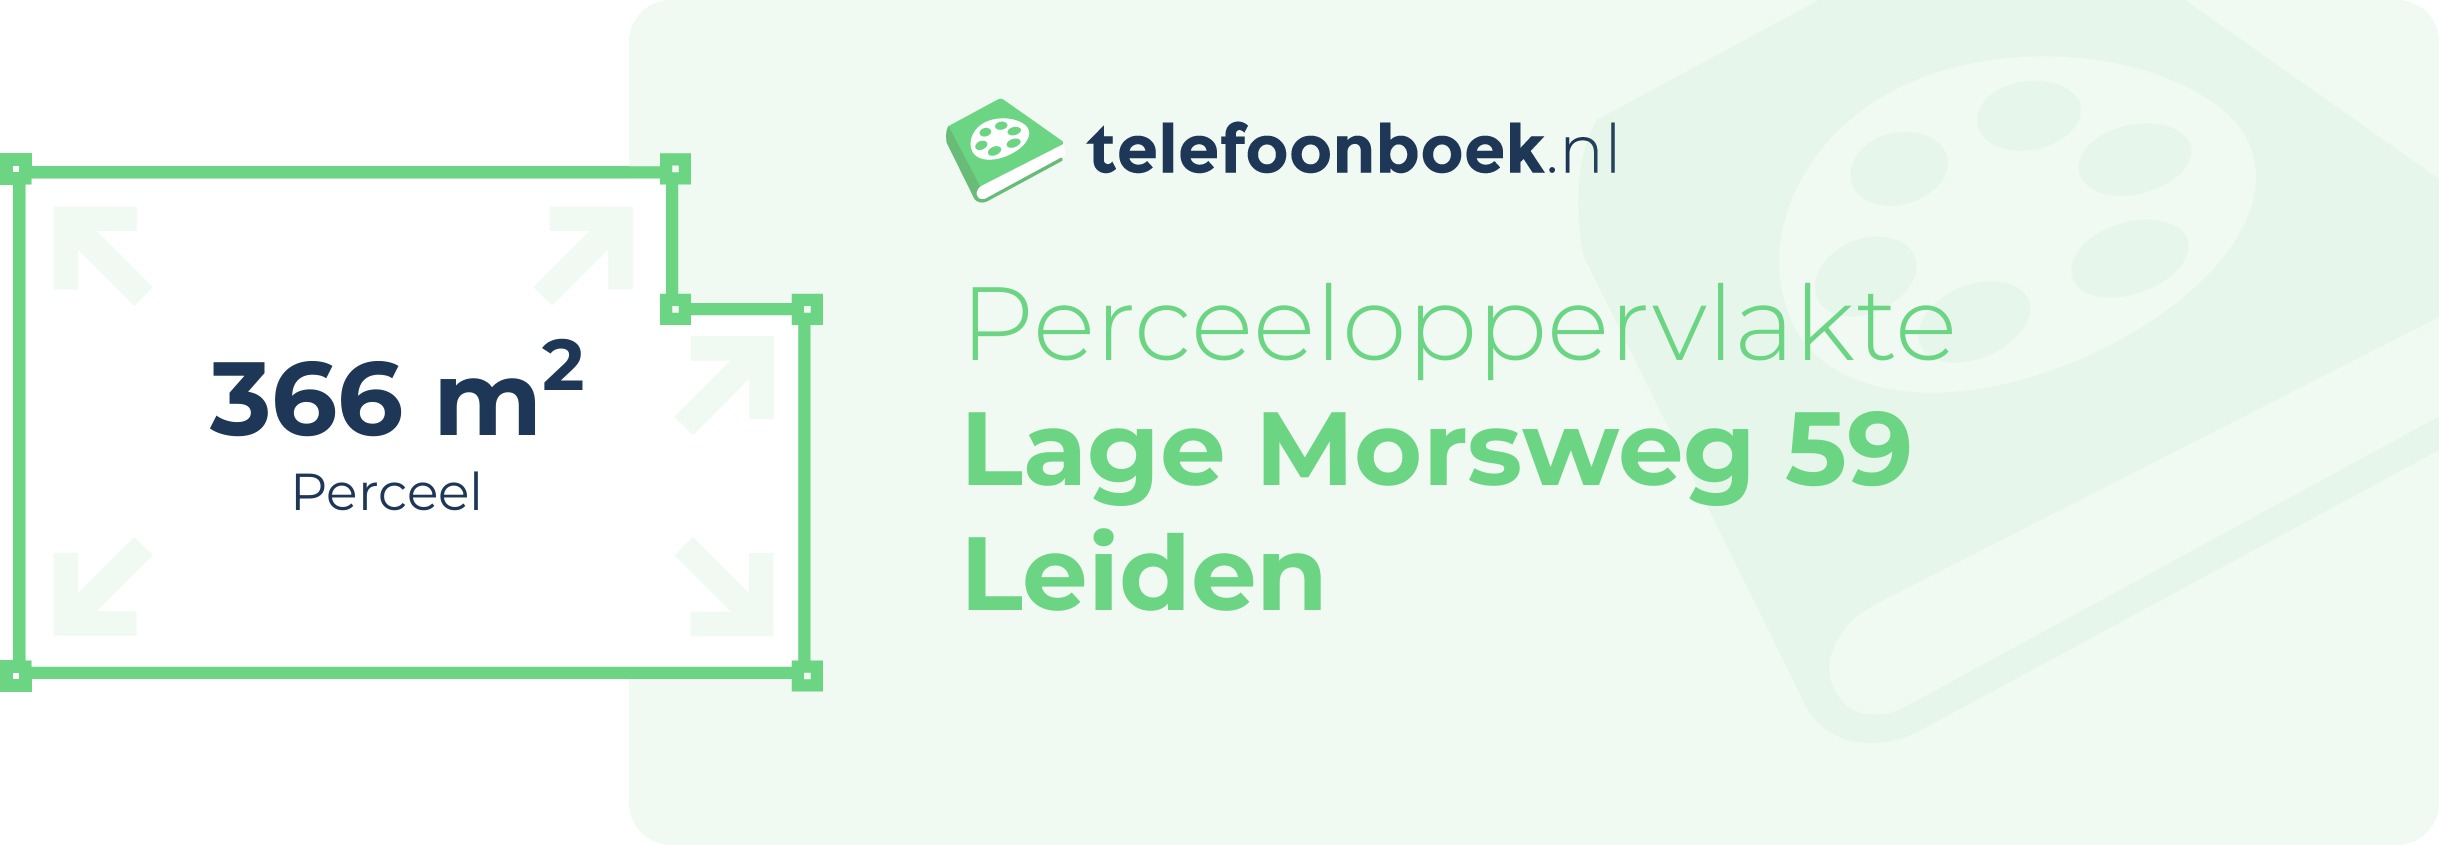 Perceeloppervlakte Lage Morsweg 59 Leiden